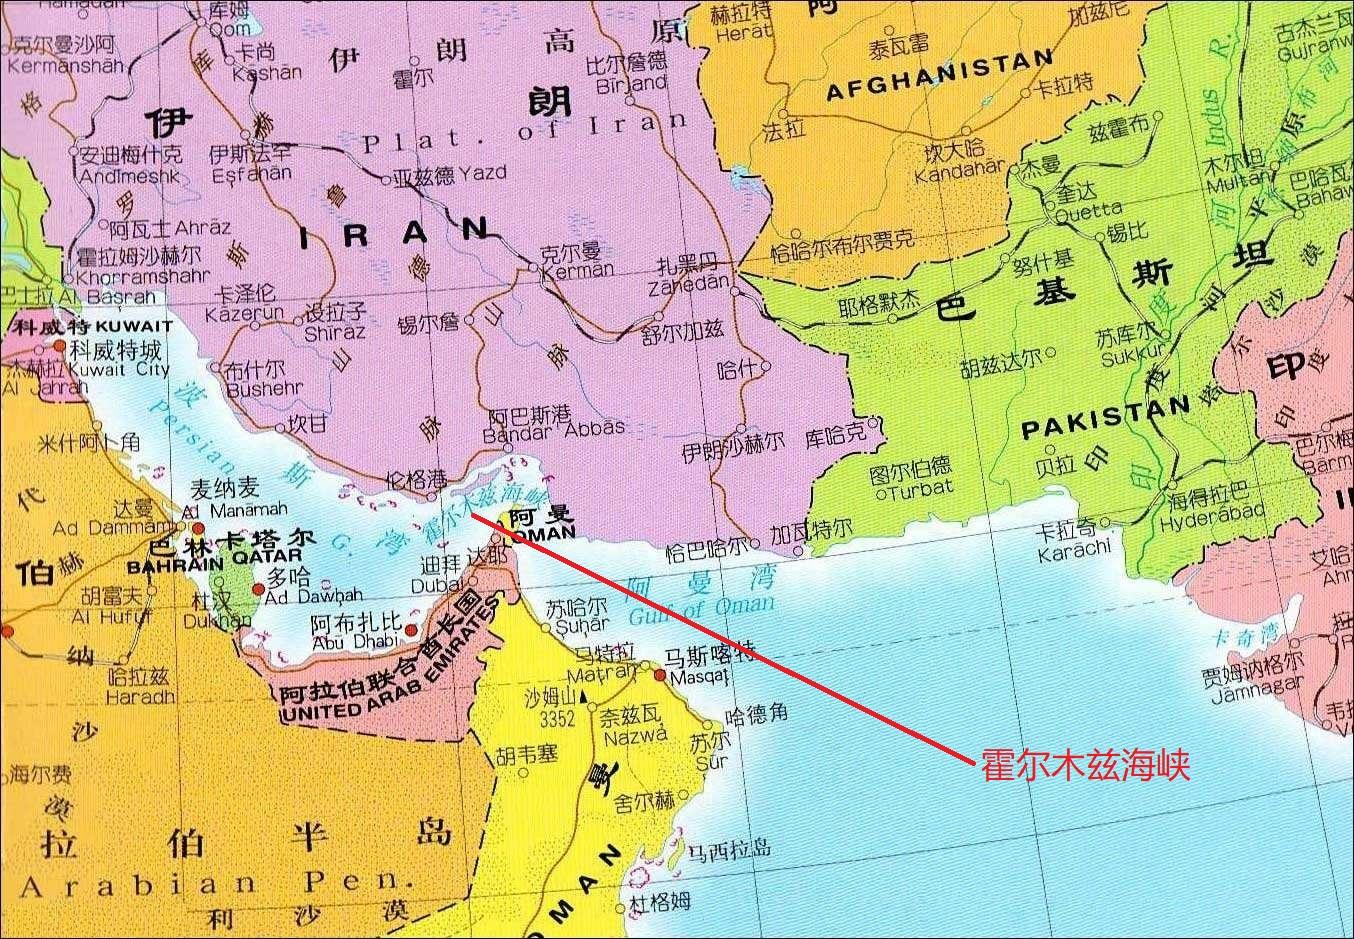 伊朗是霍尔木兹海峡北岸最重要的国家伊朗会不会选择封锁海峡